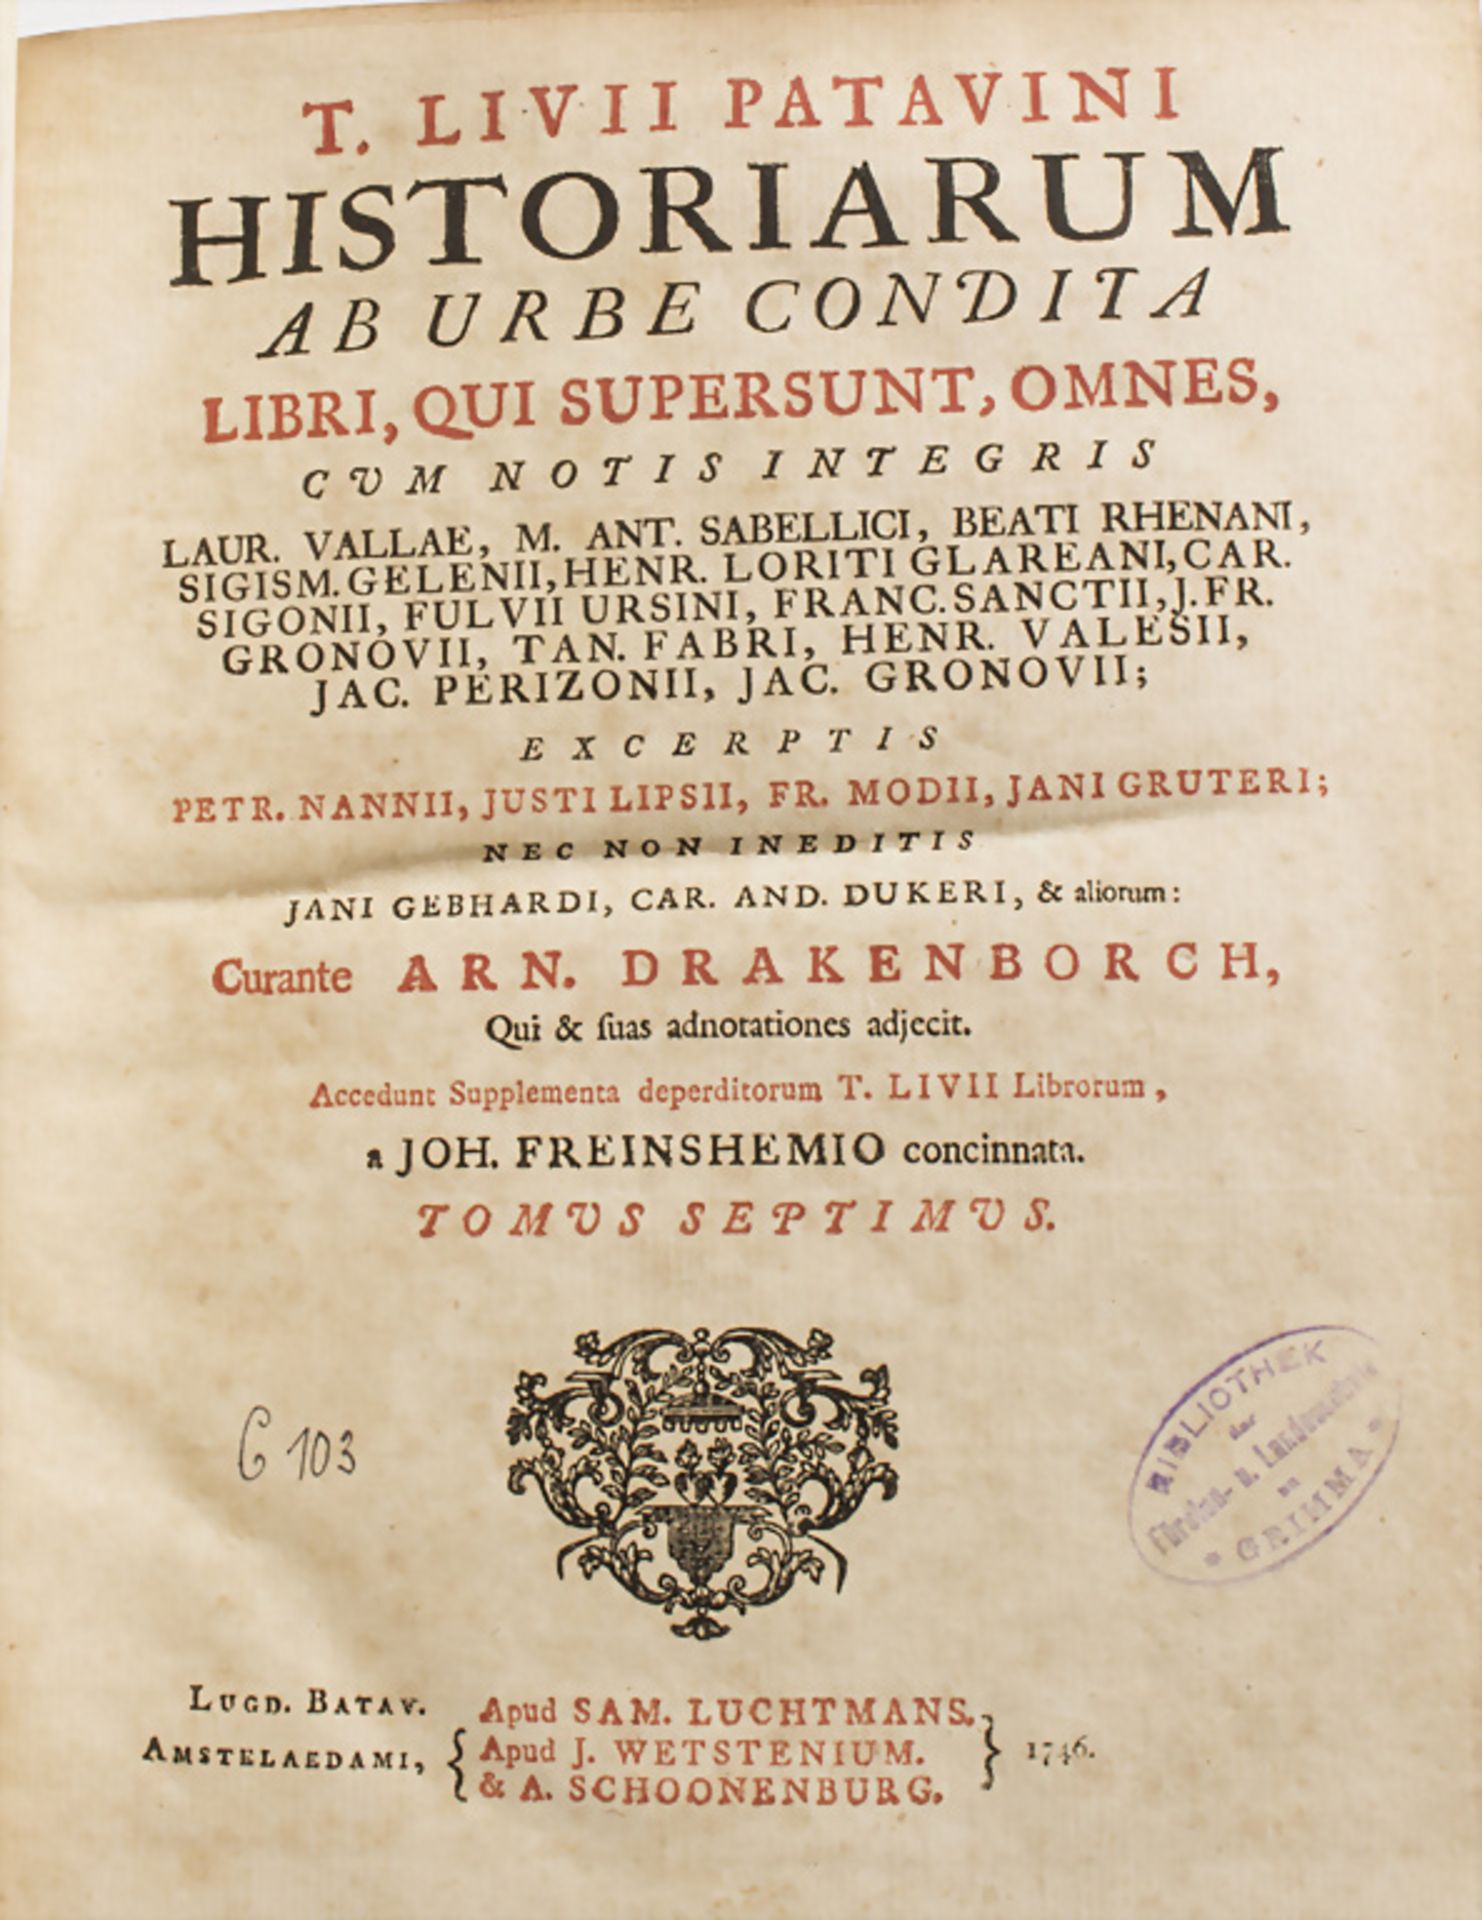 Titus livius Patavinus: Historiarum Ab Urbe Condita, 1746